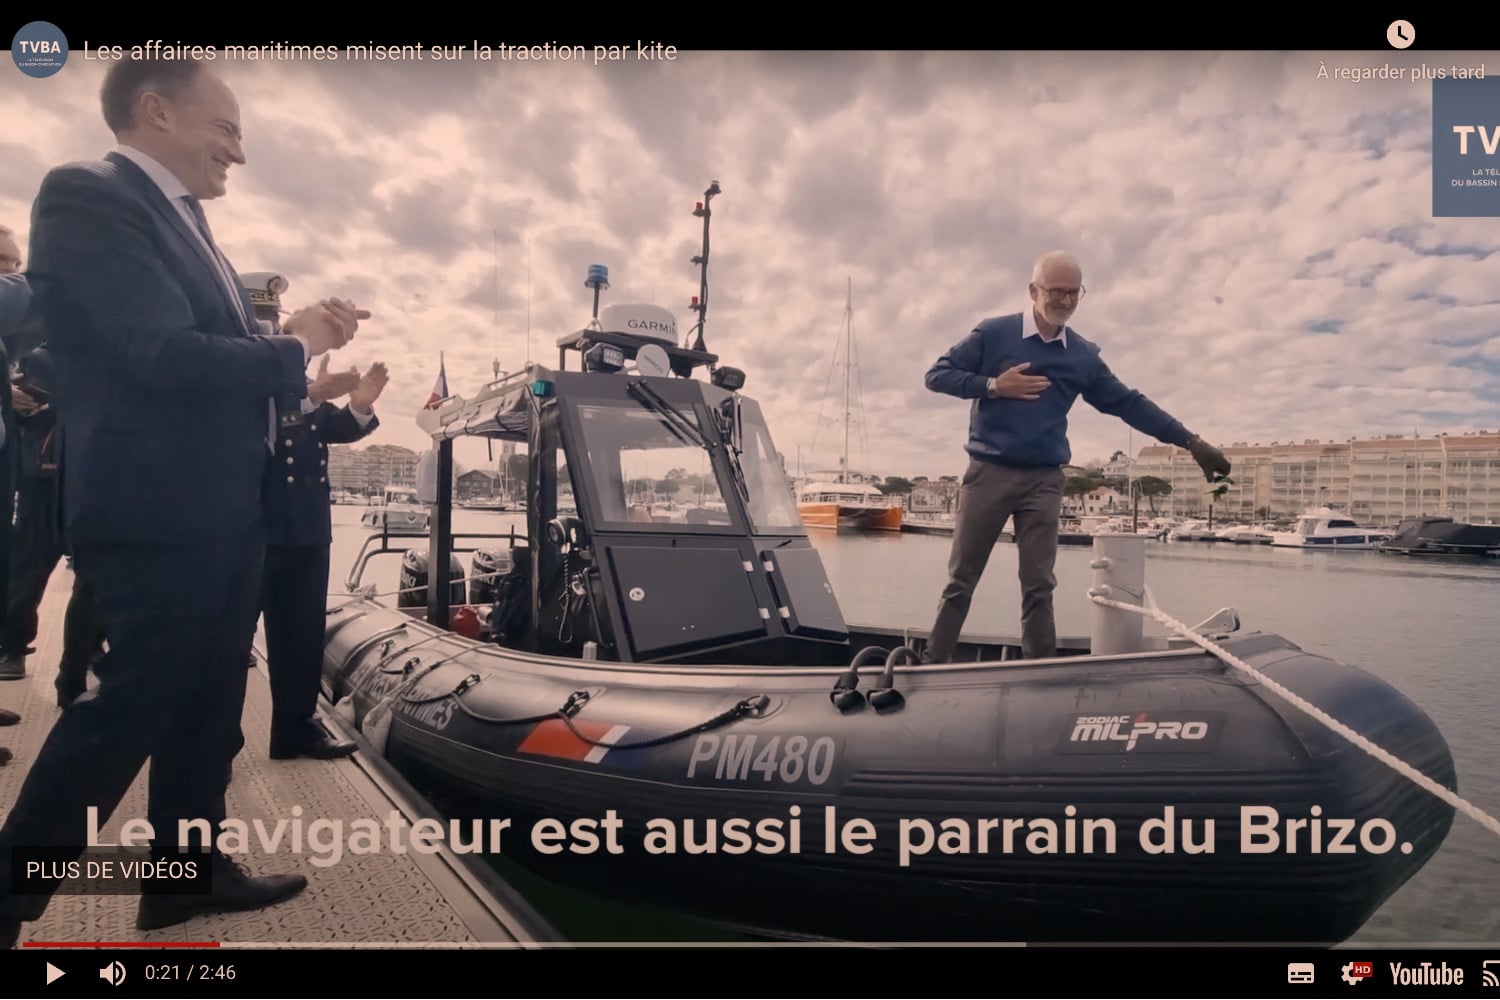 Yves Parlier baptise le Brizo, le nouveau navire des affaires maritimes de l'État